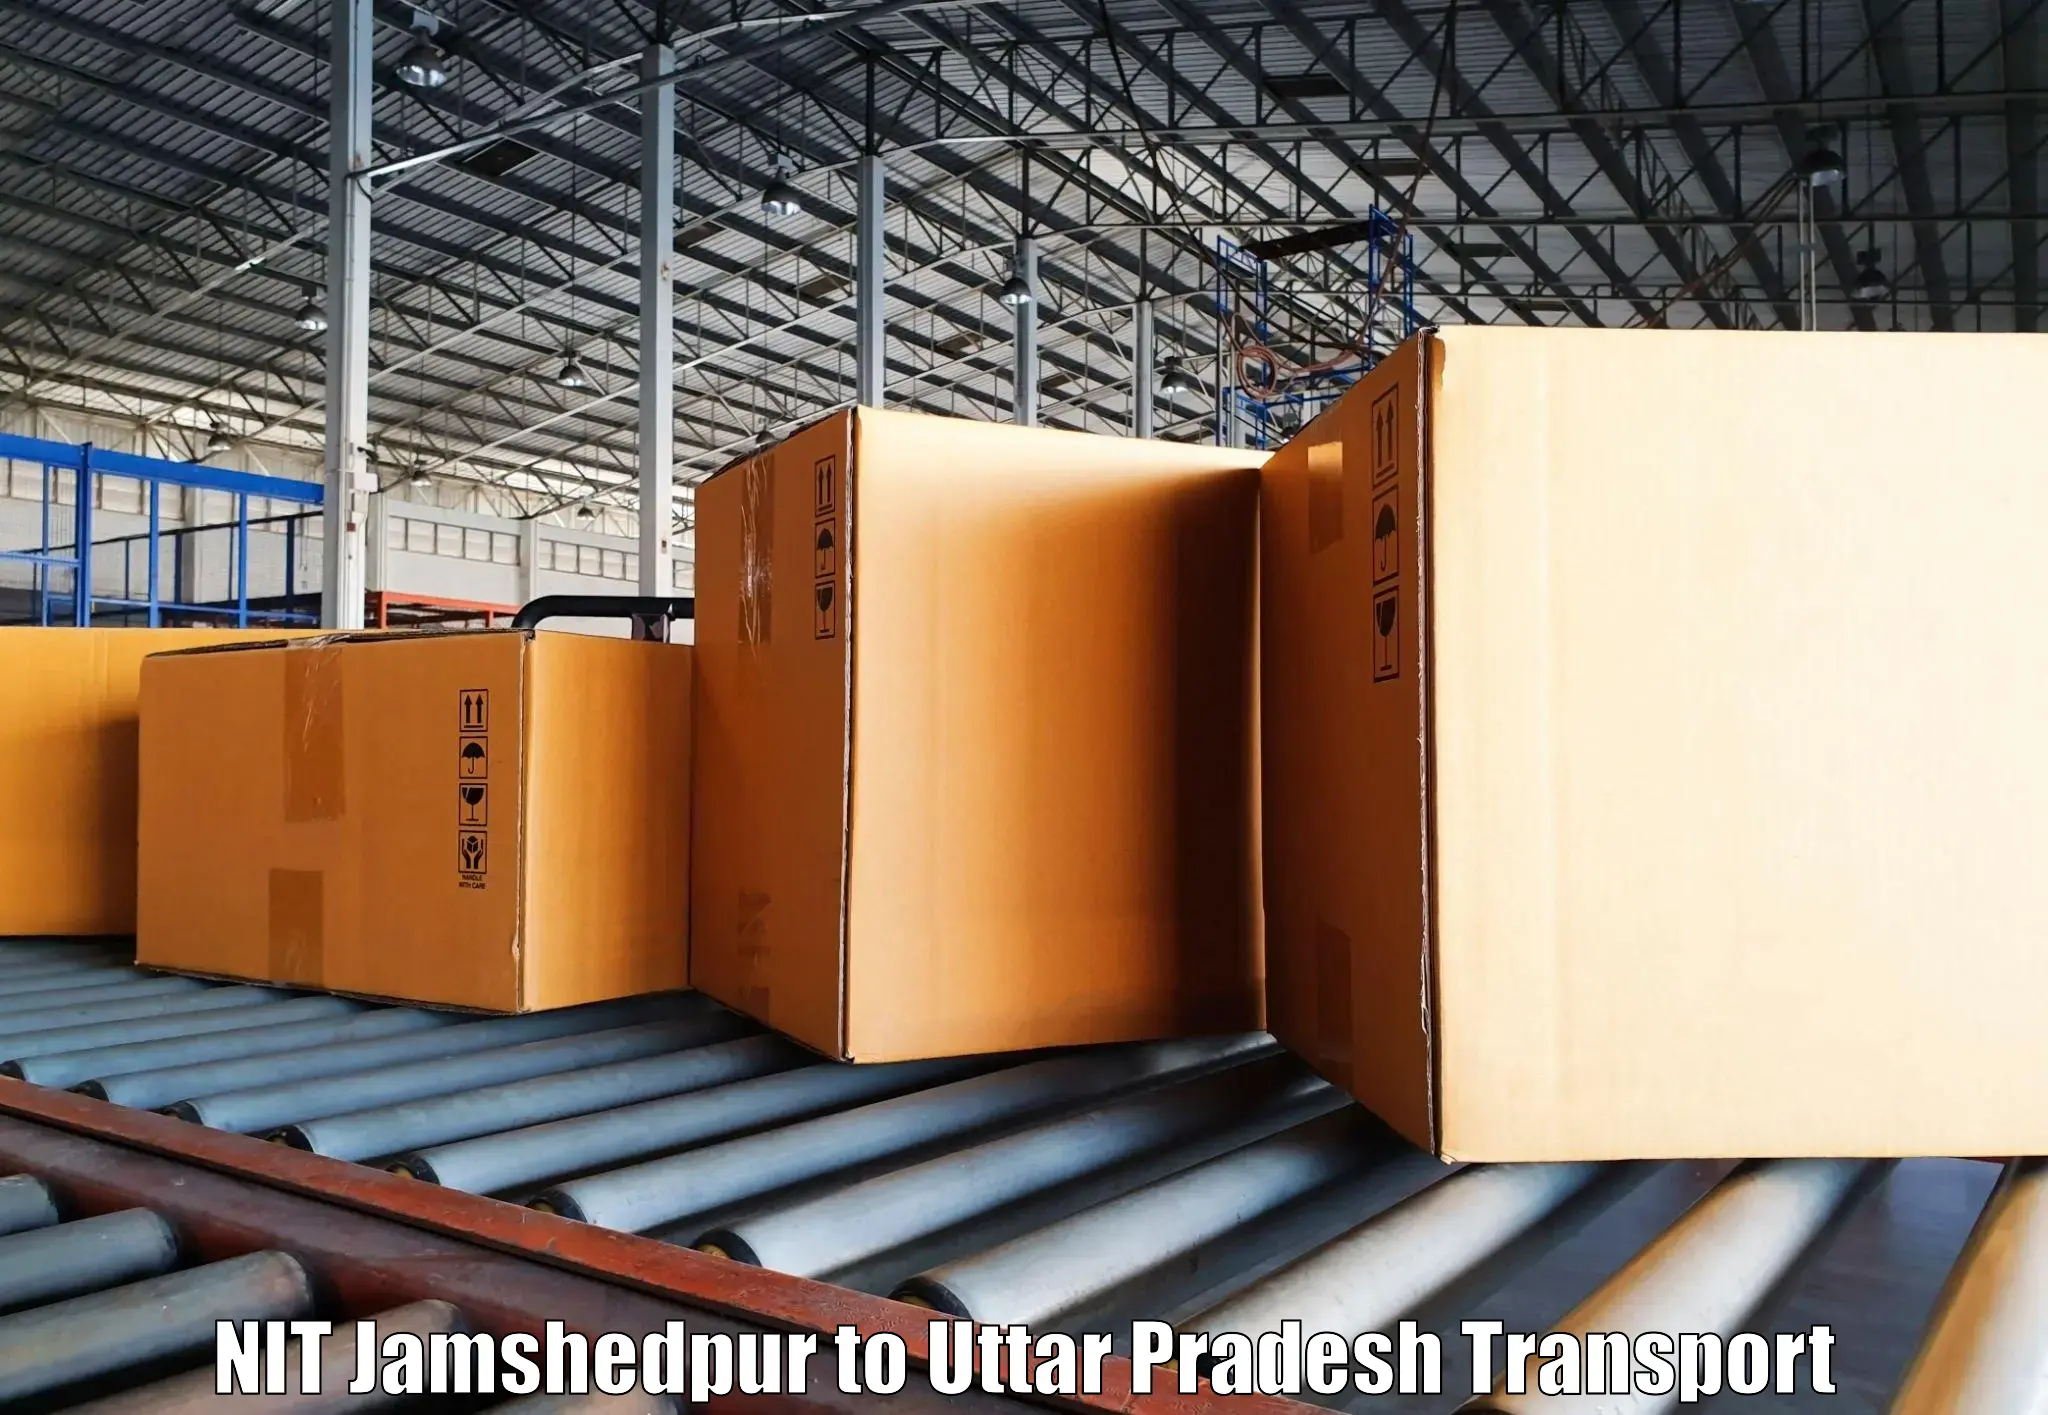 Furniture transport service NIT Jamshedpur to Rampur Maniharan